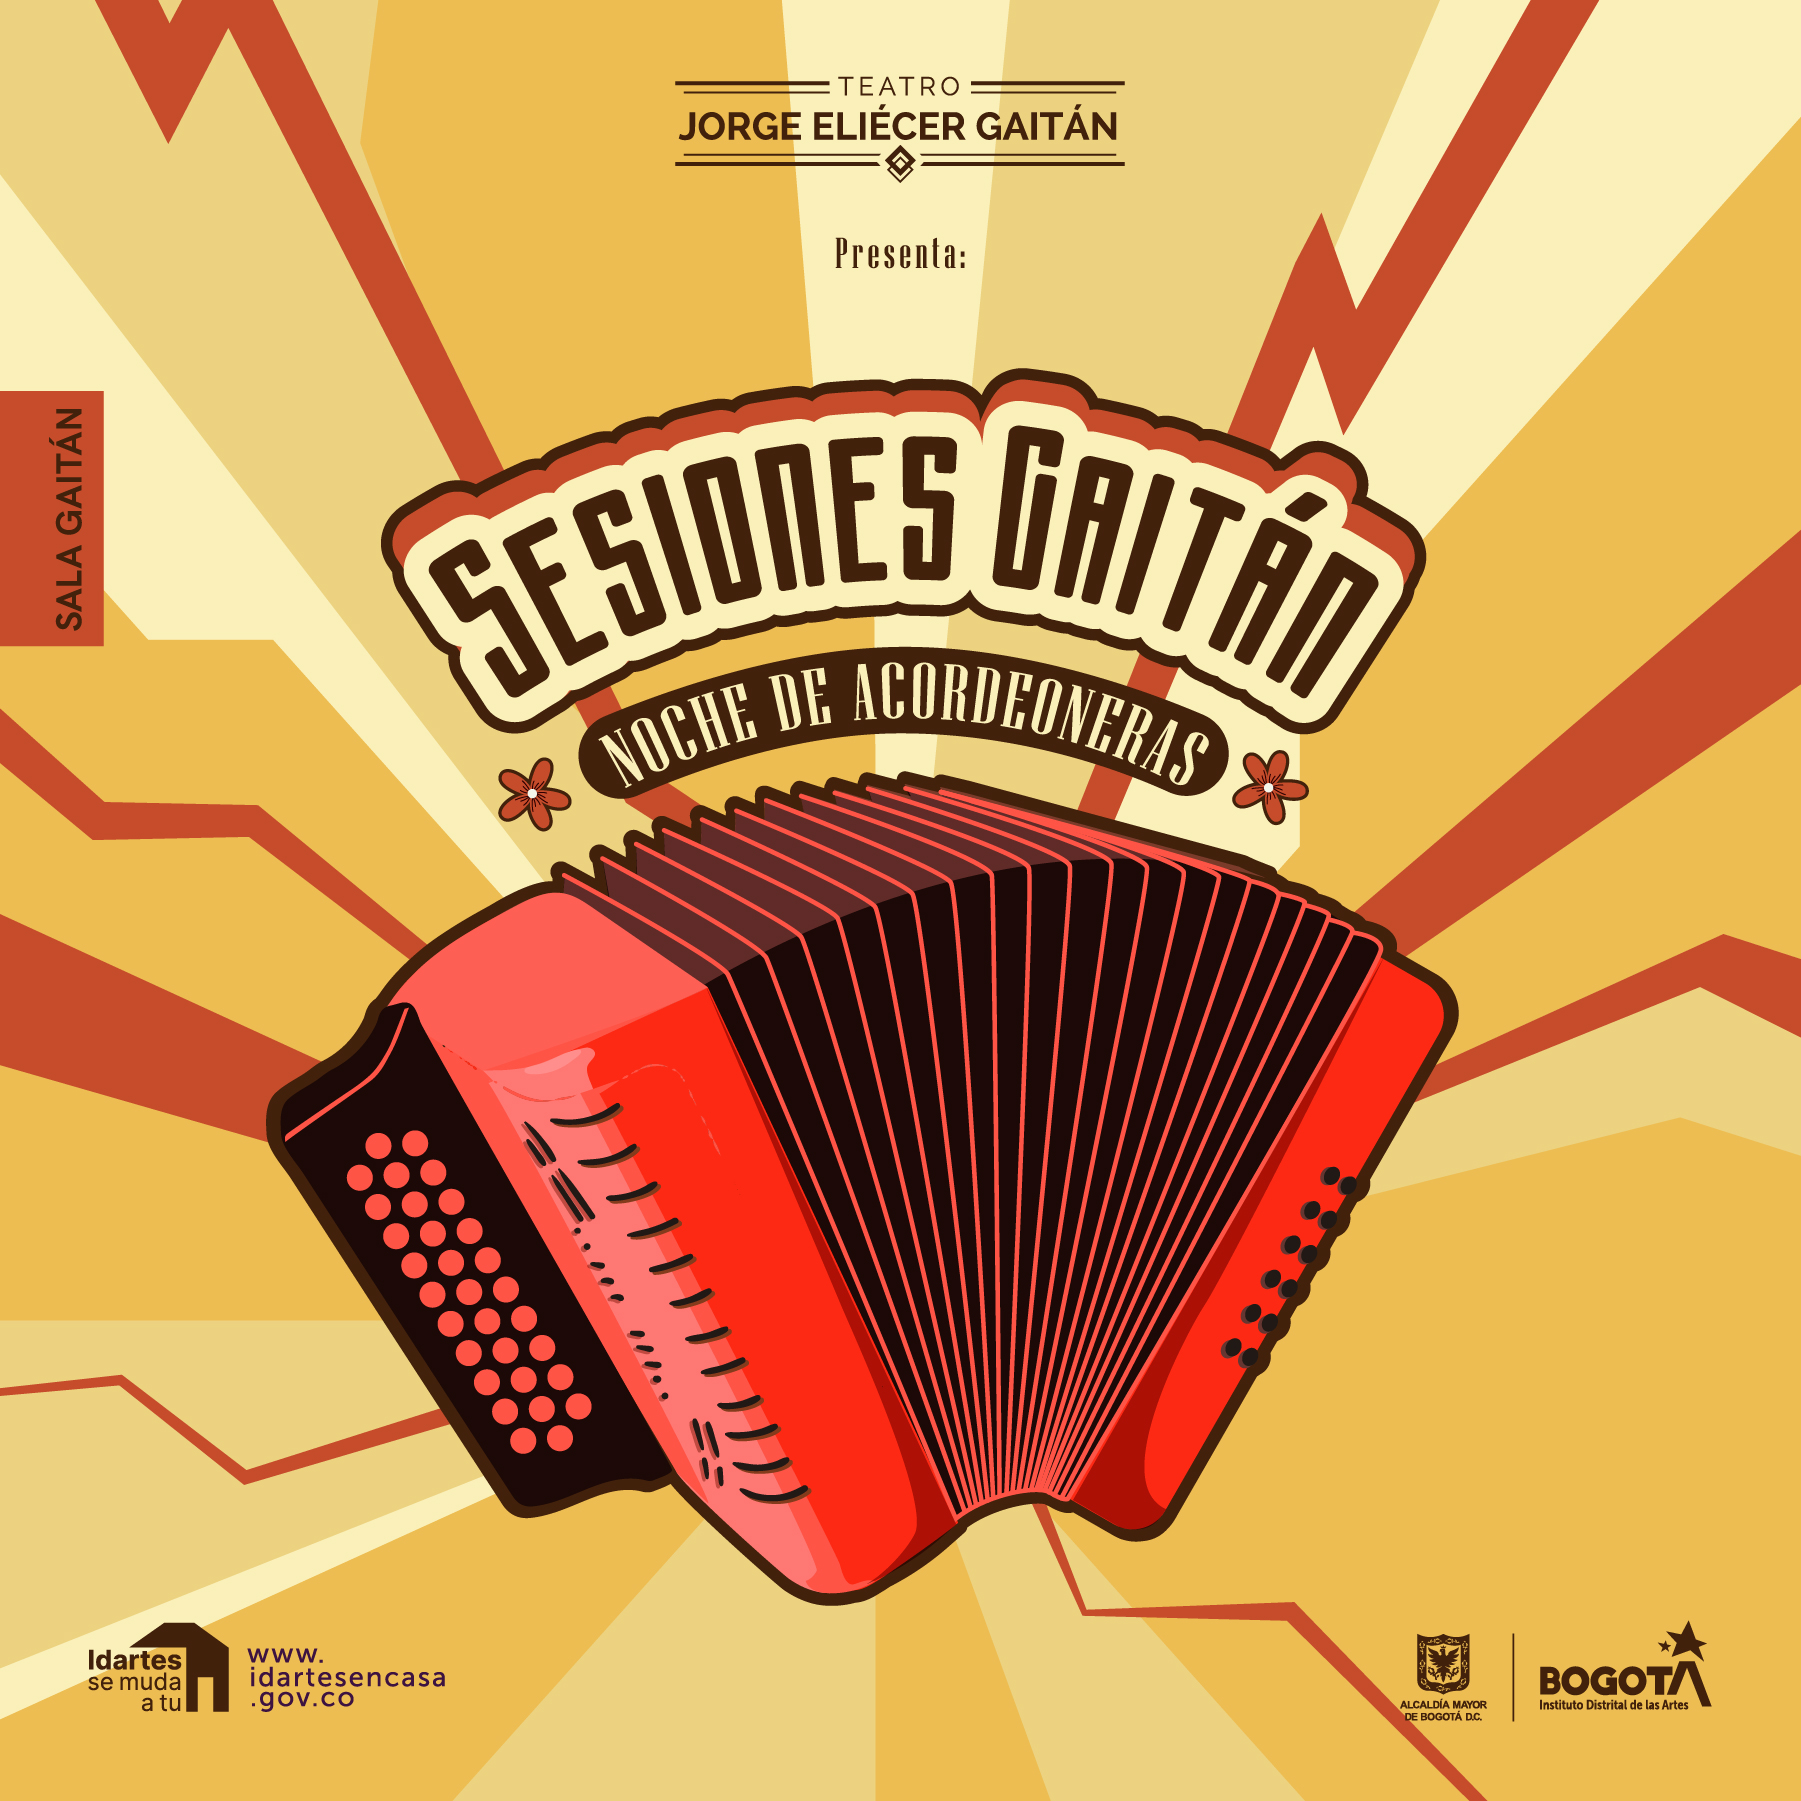 La Sala Gaitán presenta: Noche de acordeoneras